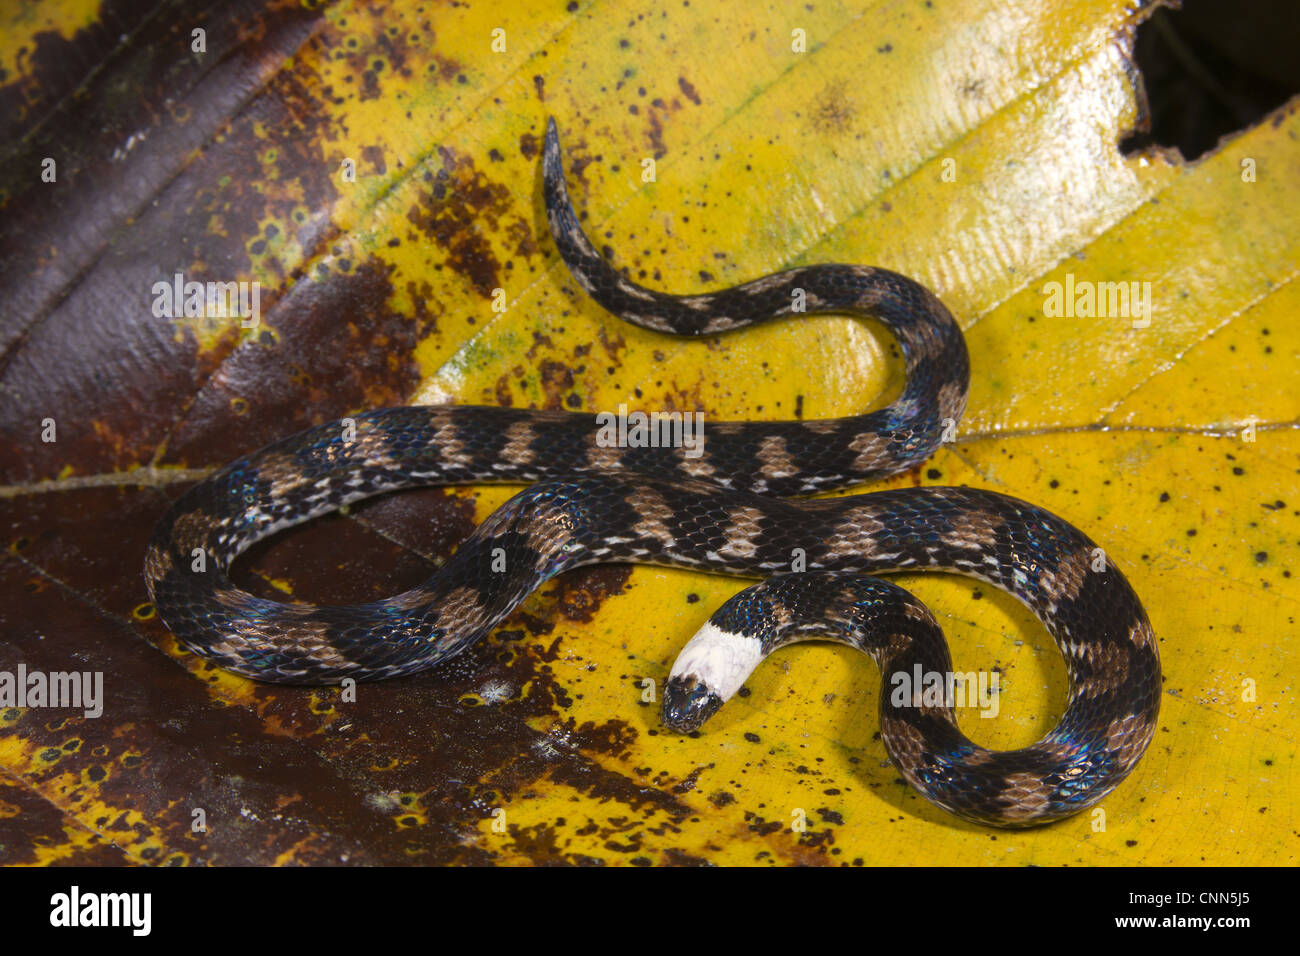 Tierra (Serpiente Atractus sp.) para adultos, sobre la hojarasca, Los Amigos de la estación biológica, Madre de Dios, Amazonia, Perú Foto de stock